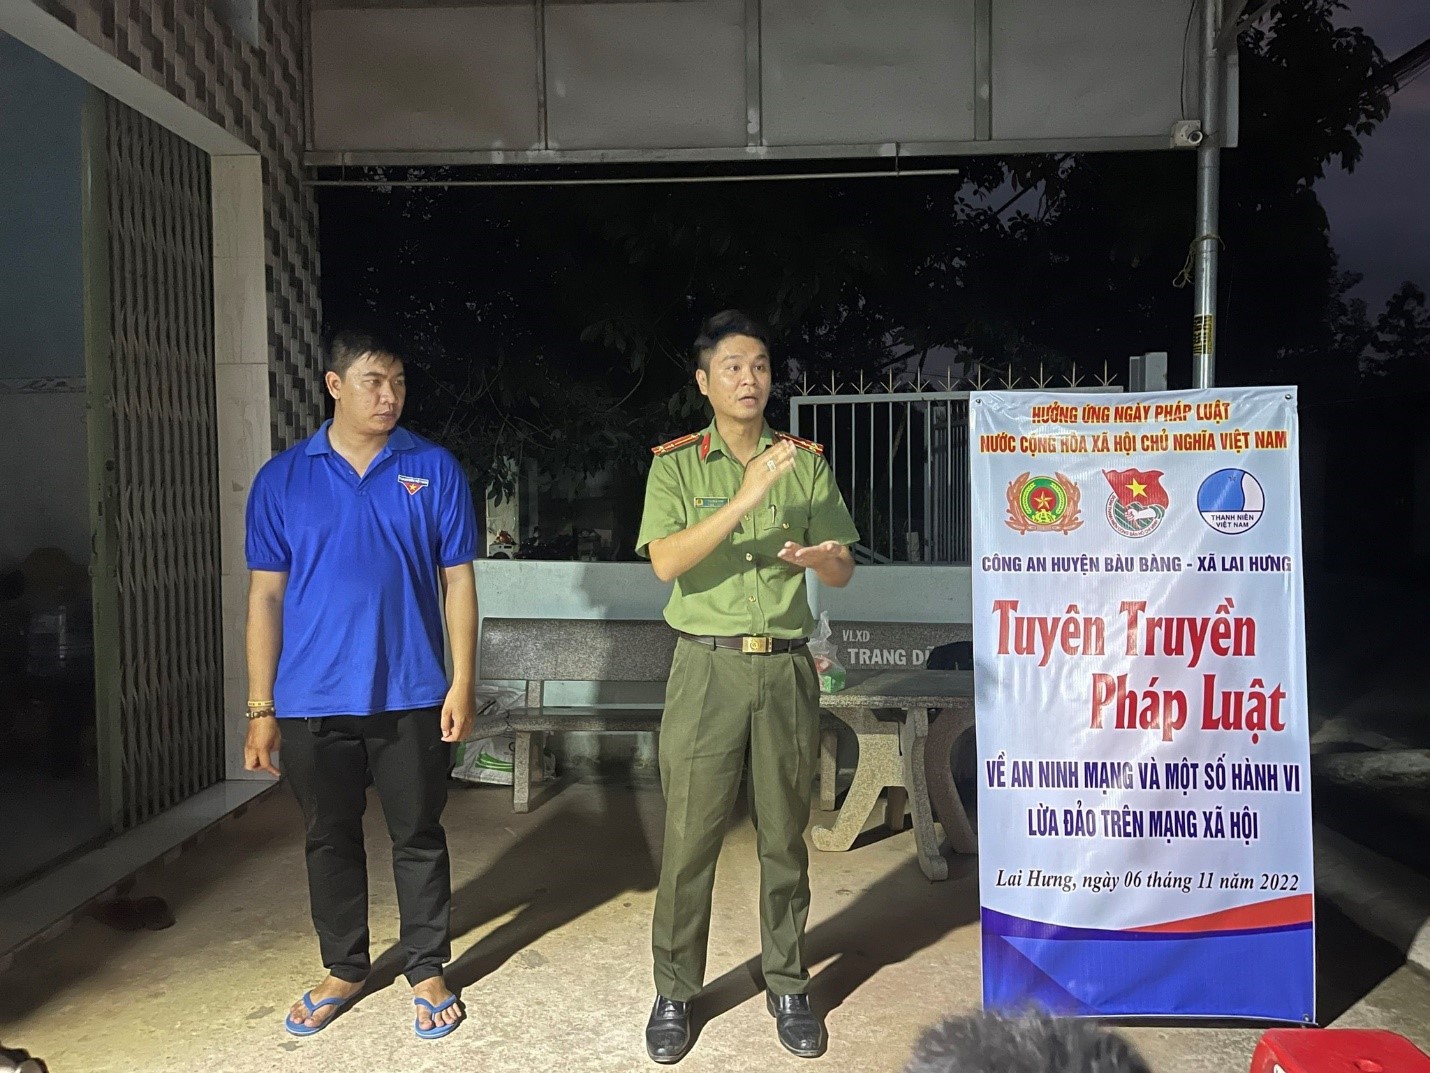 Công an huyện Bàu Bàng tổ chức hoạt động tuyên truyền phổ biến giáo dục pháp luật